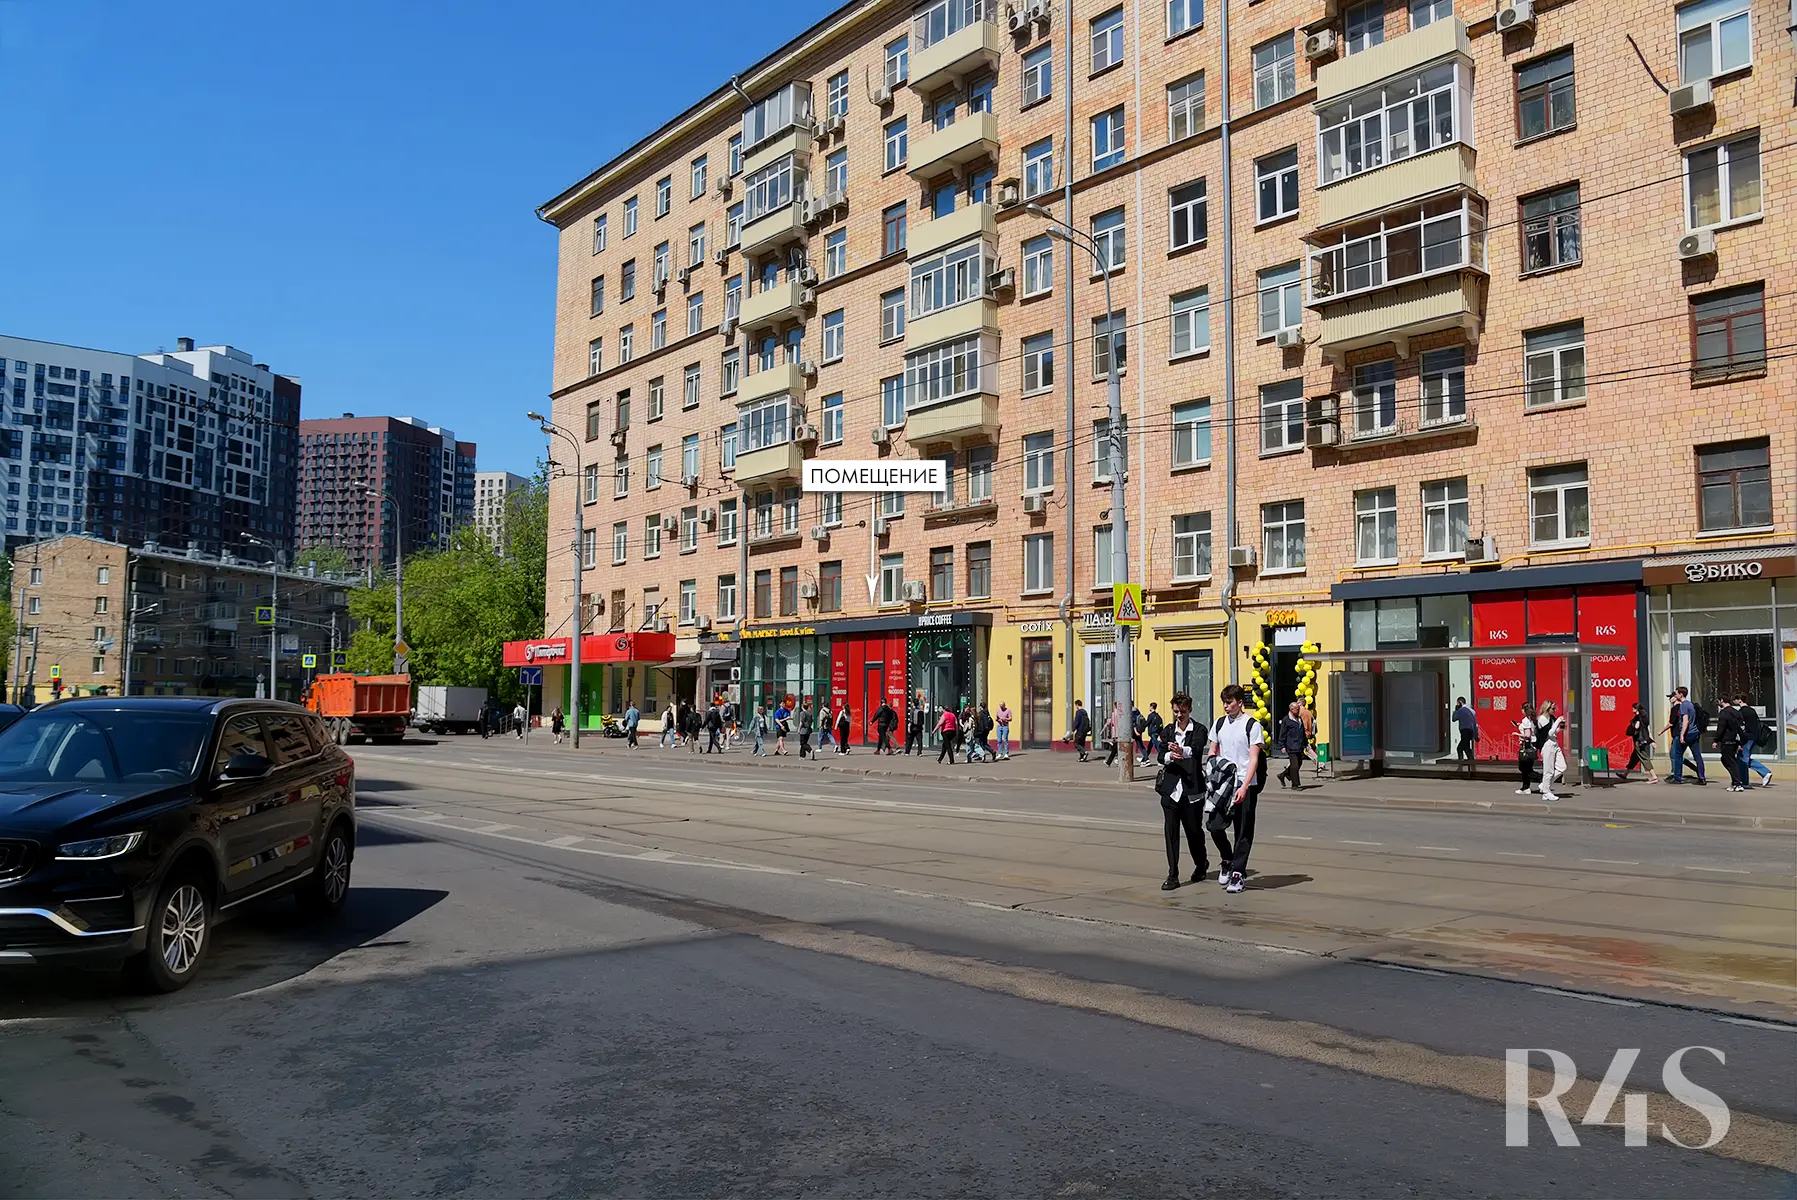 Аренда торгового помещения площадью 153.4 м2 в Москве: Красноказарменная, 23 R4S | Realty4Sale